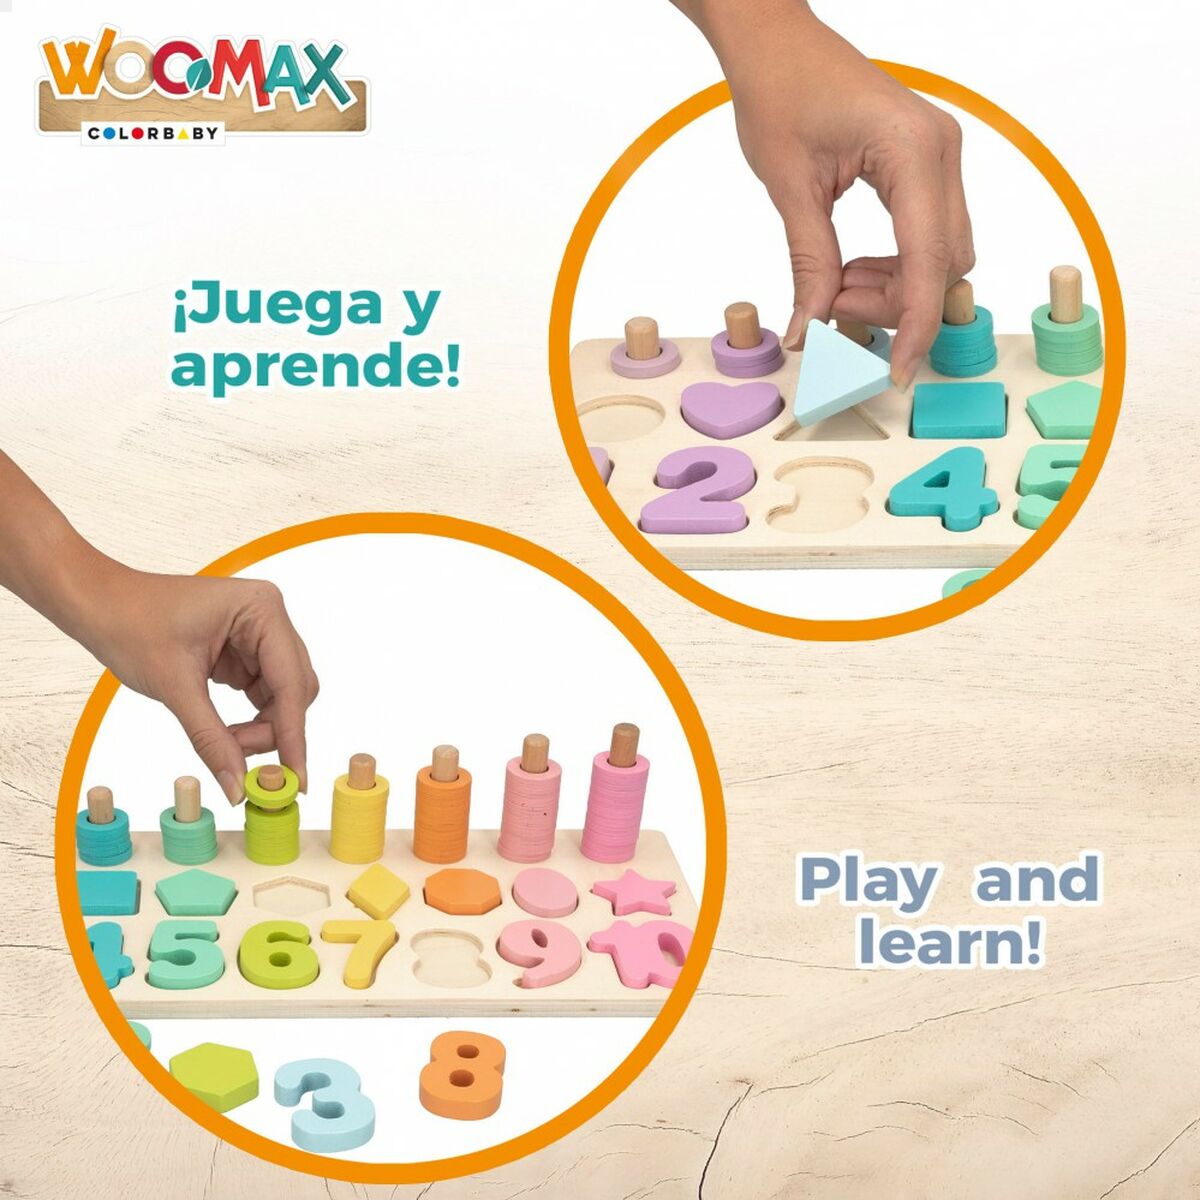 Barnpussel i trä Woomax Former Siffror + 3 år (6 antal)-Leksaker och spel, Pussel och hjärngrupper-Woomax-peaceofhome.se